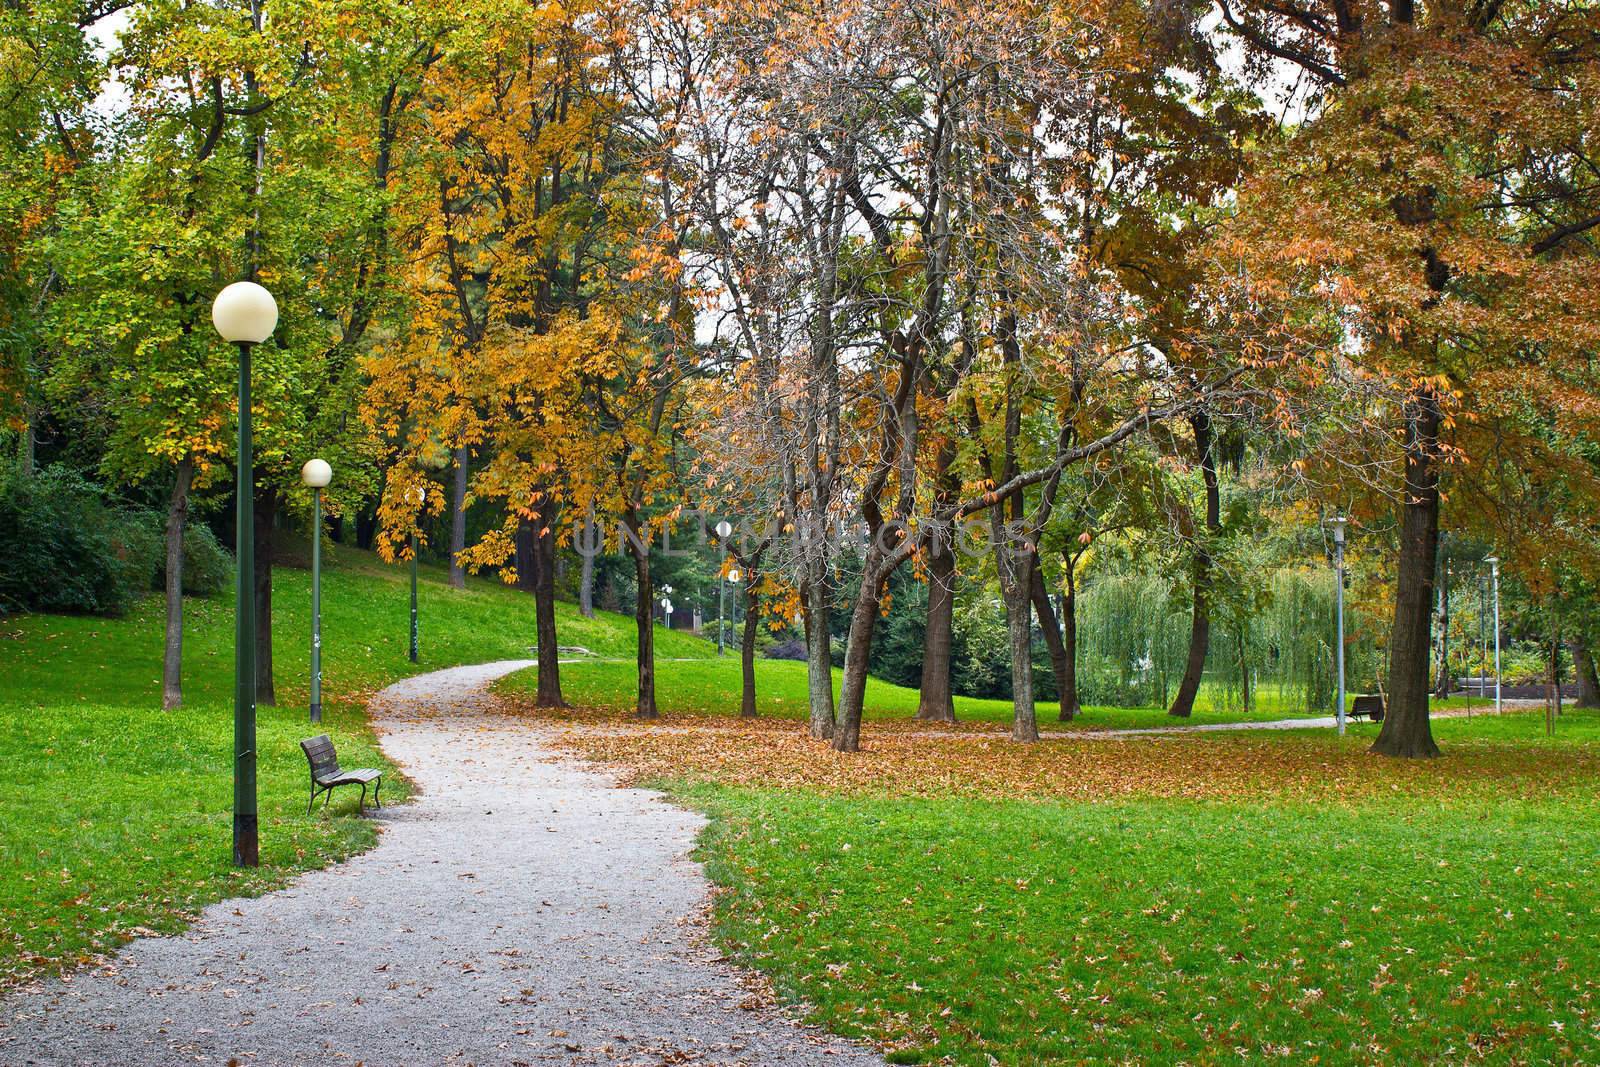 Zagreb autumn park walkway, Croatia by xbrchx